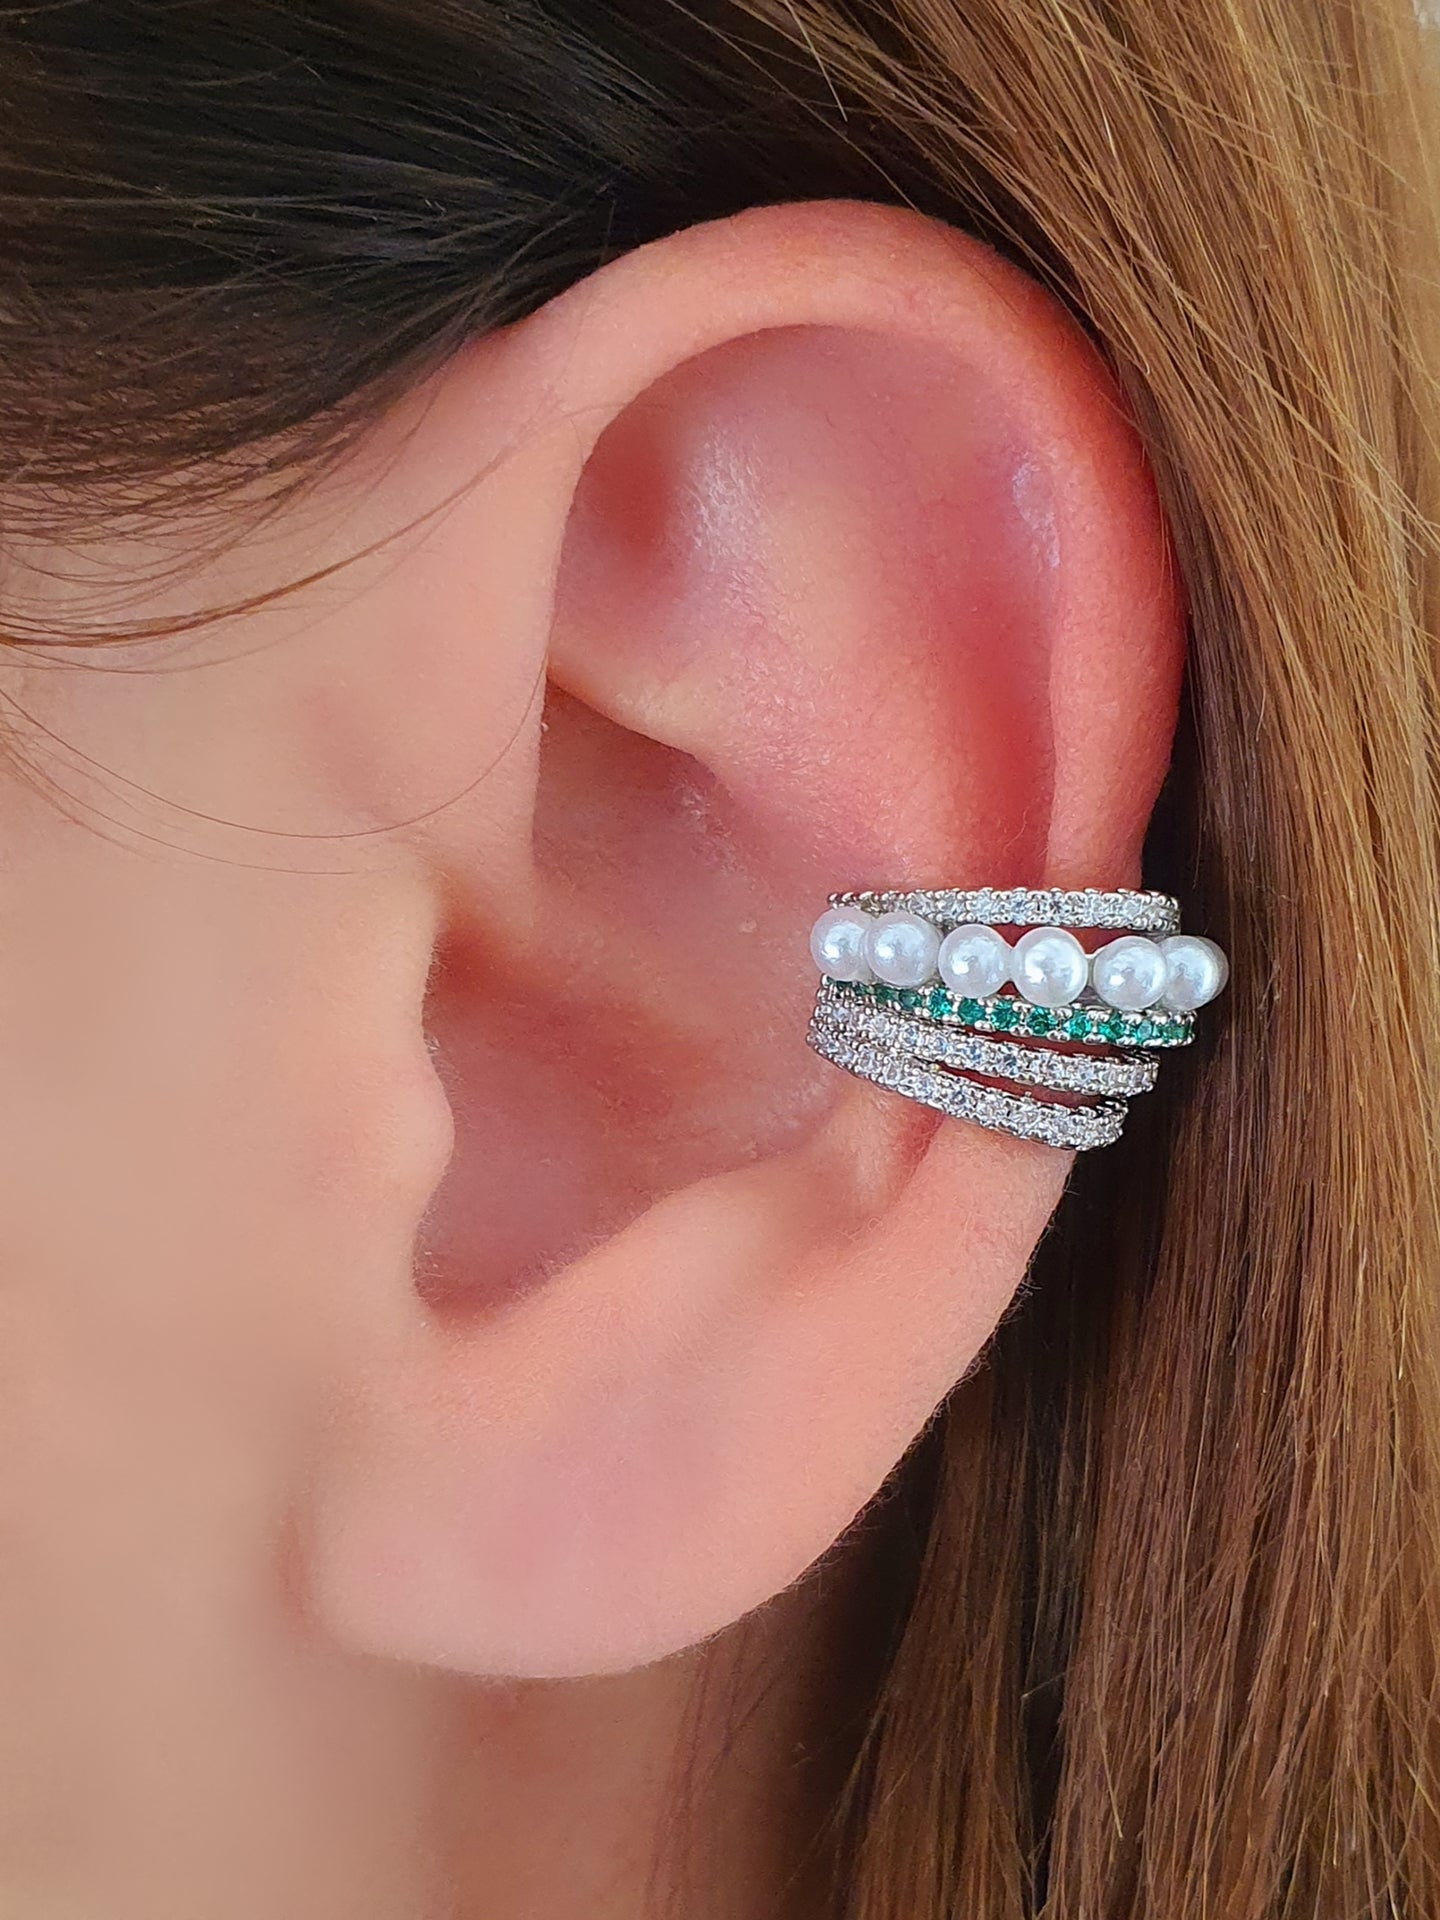 Ear cuff "Ariel" Silver con Pietre Smeraldo - 333HOPE333